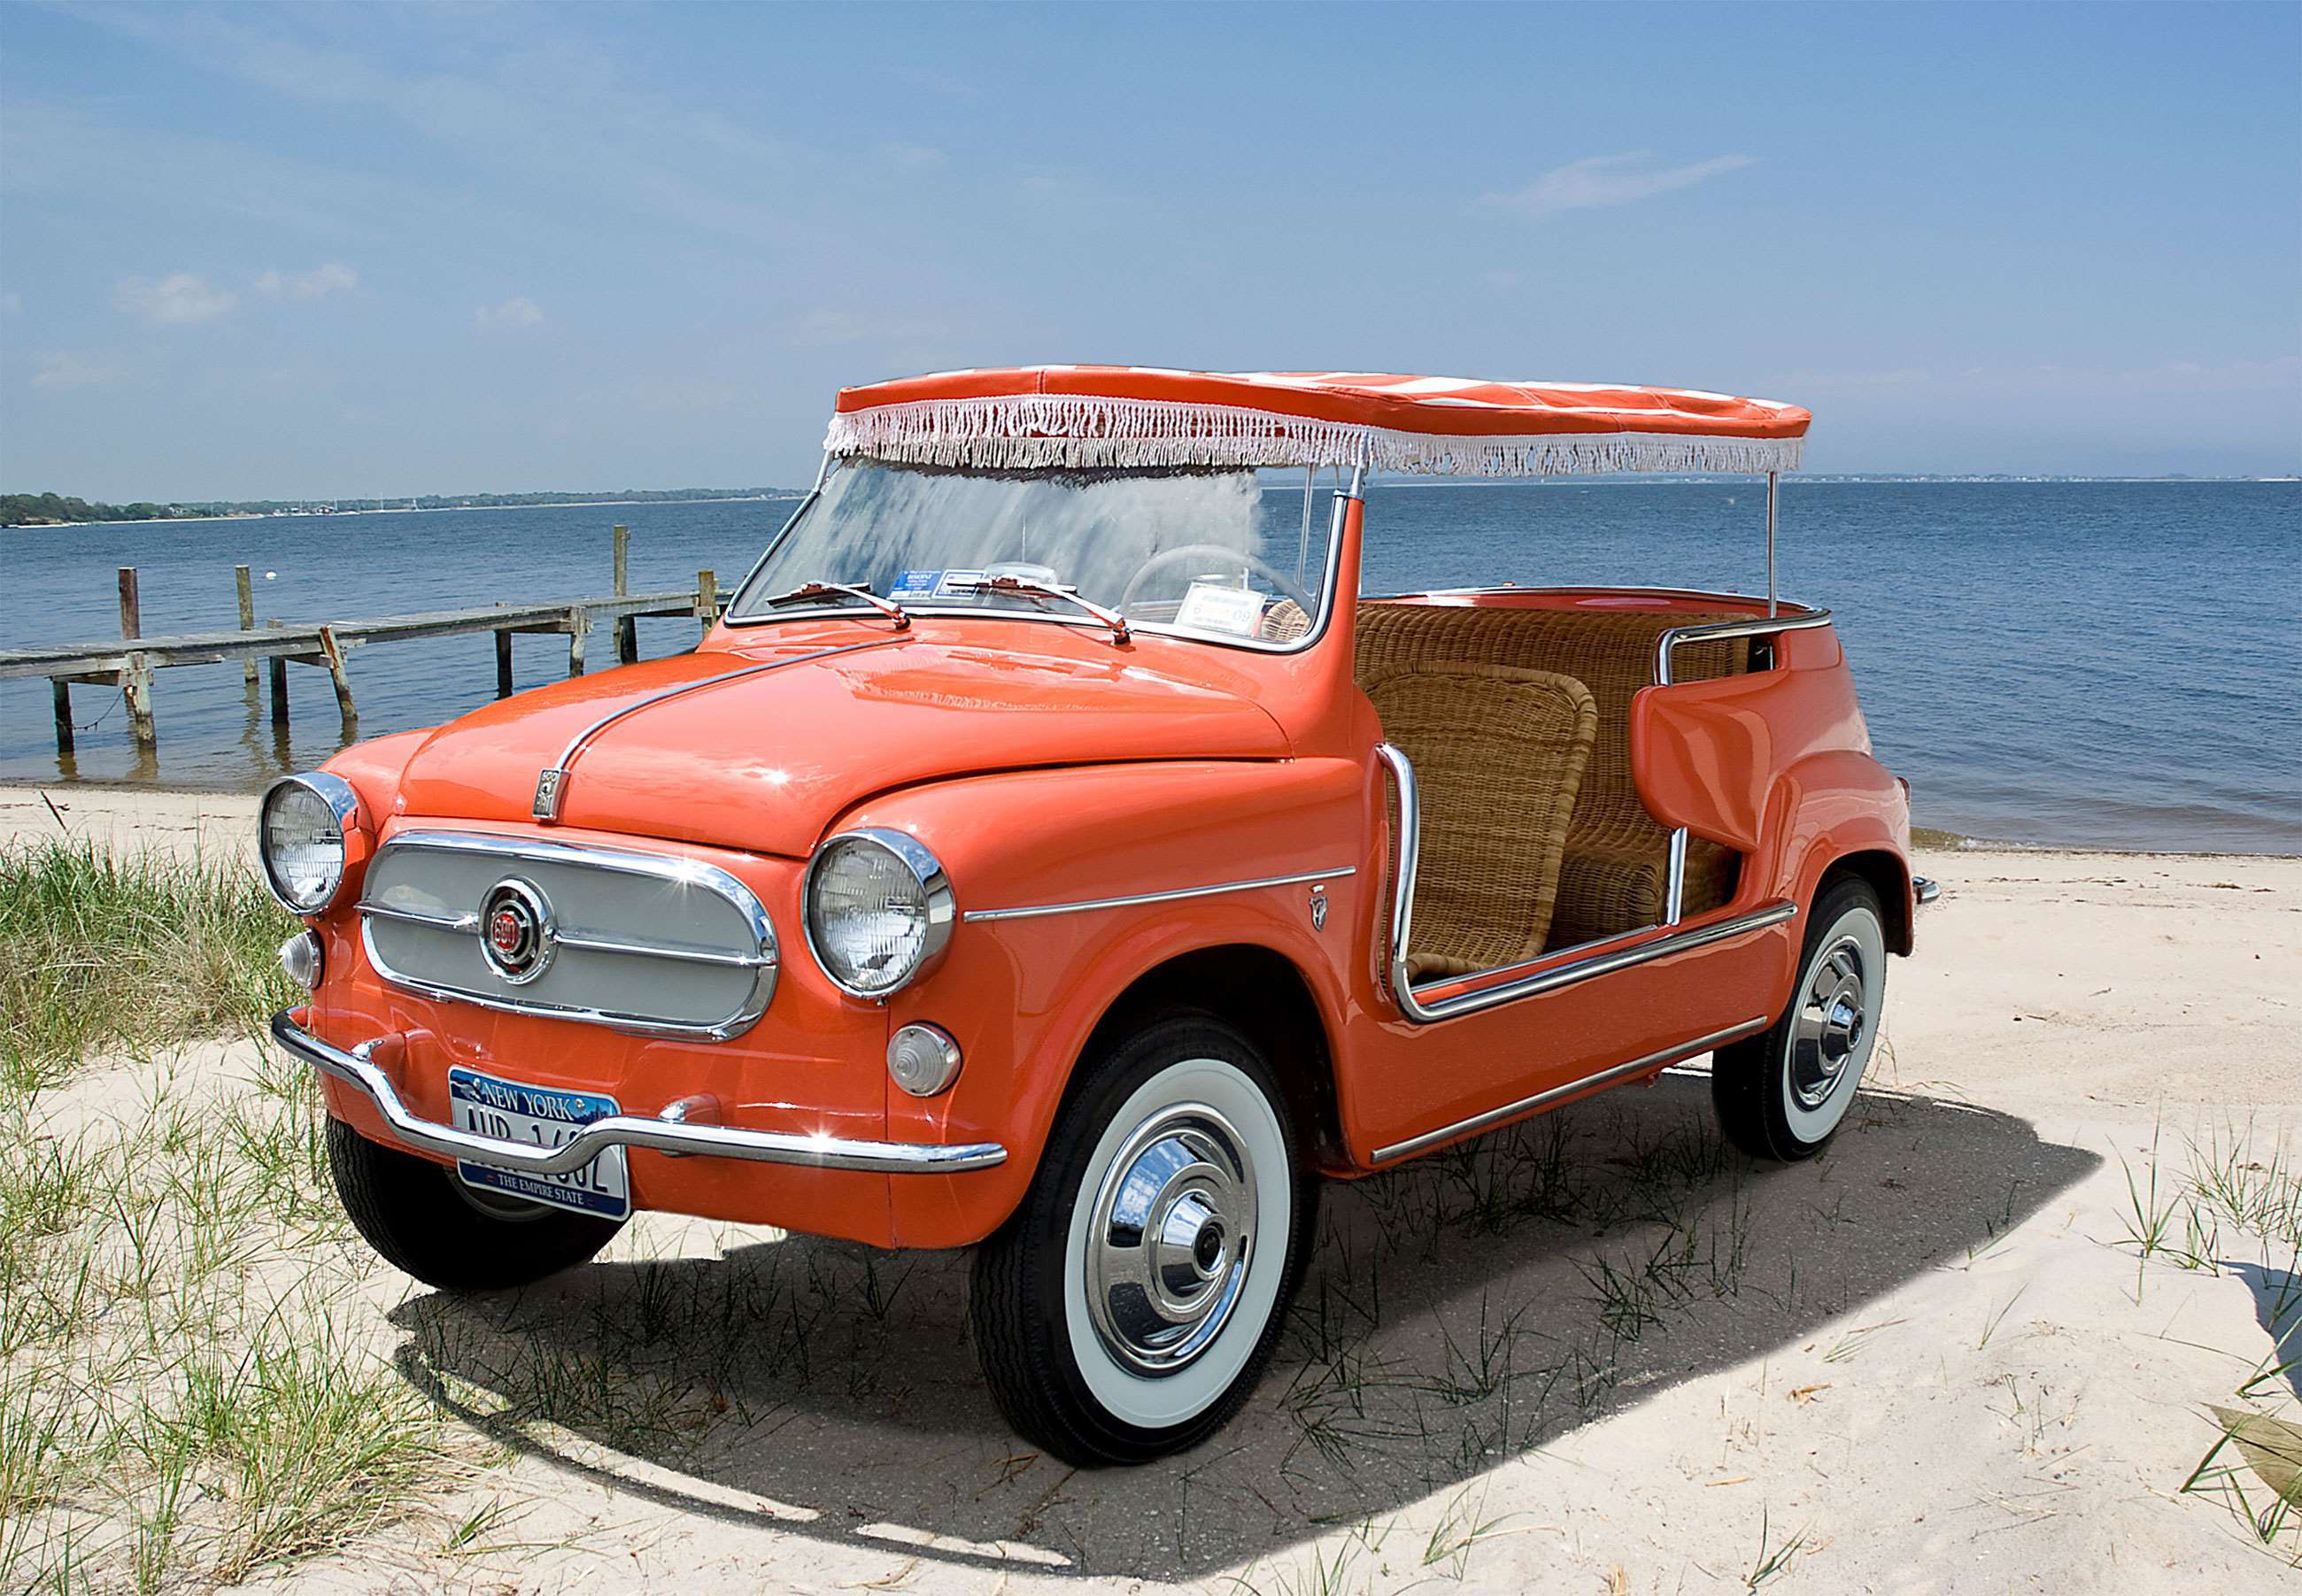 best-beach-cars-list-fiat-600-jolly-ghia-bonhams-goodwood-06082021.jpg